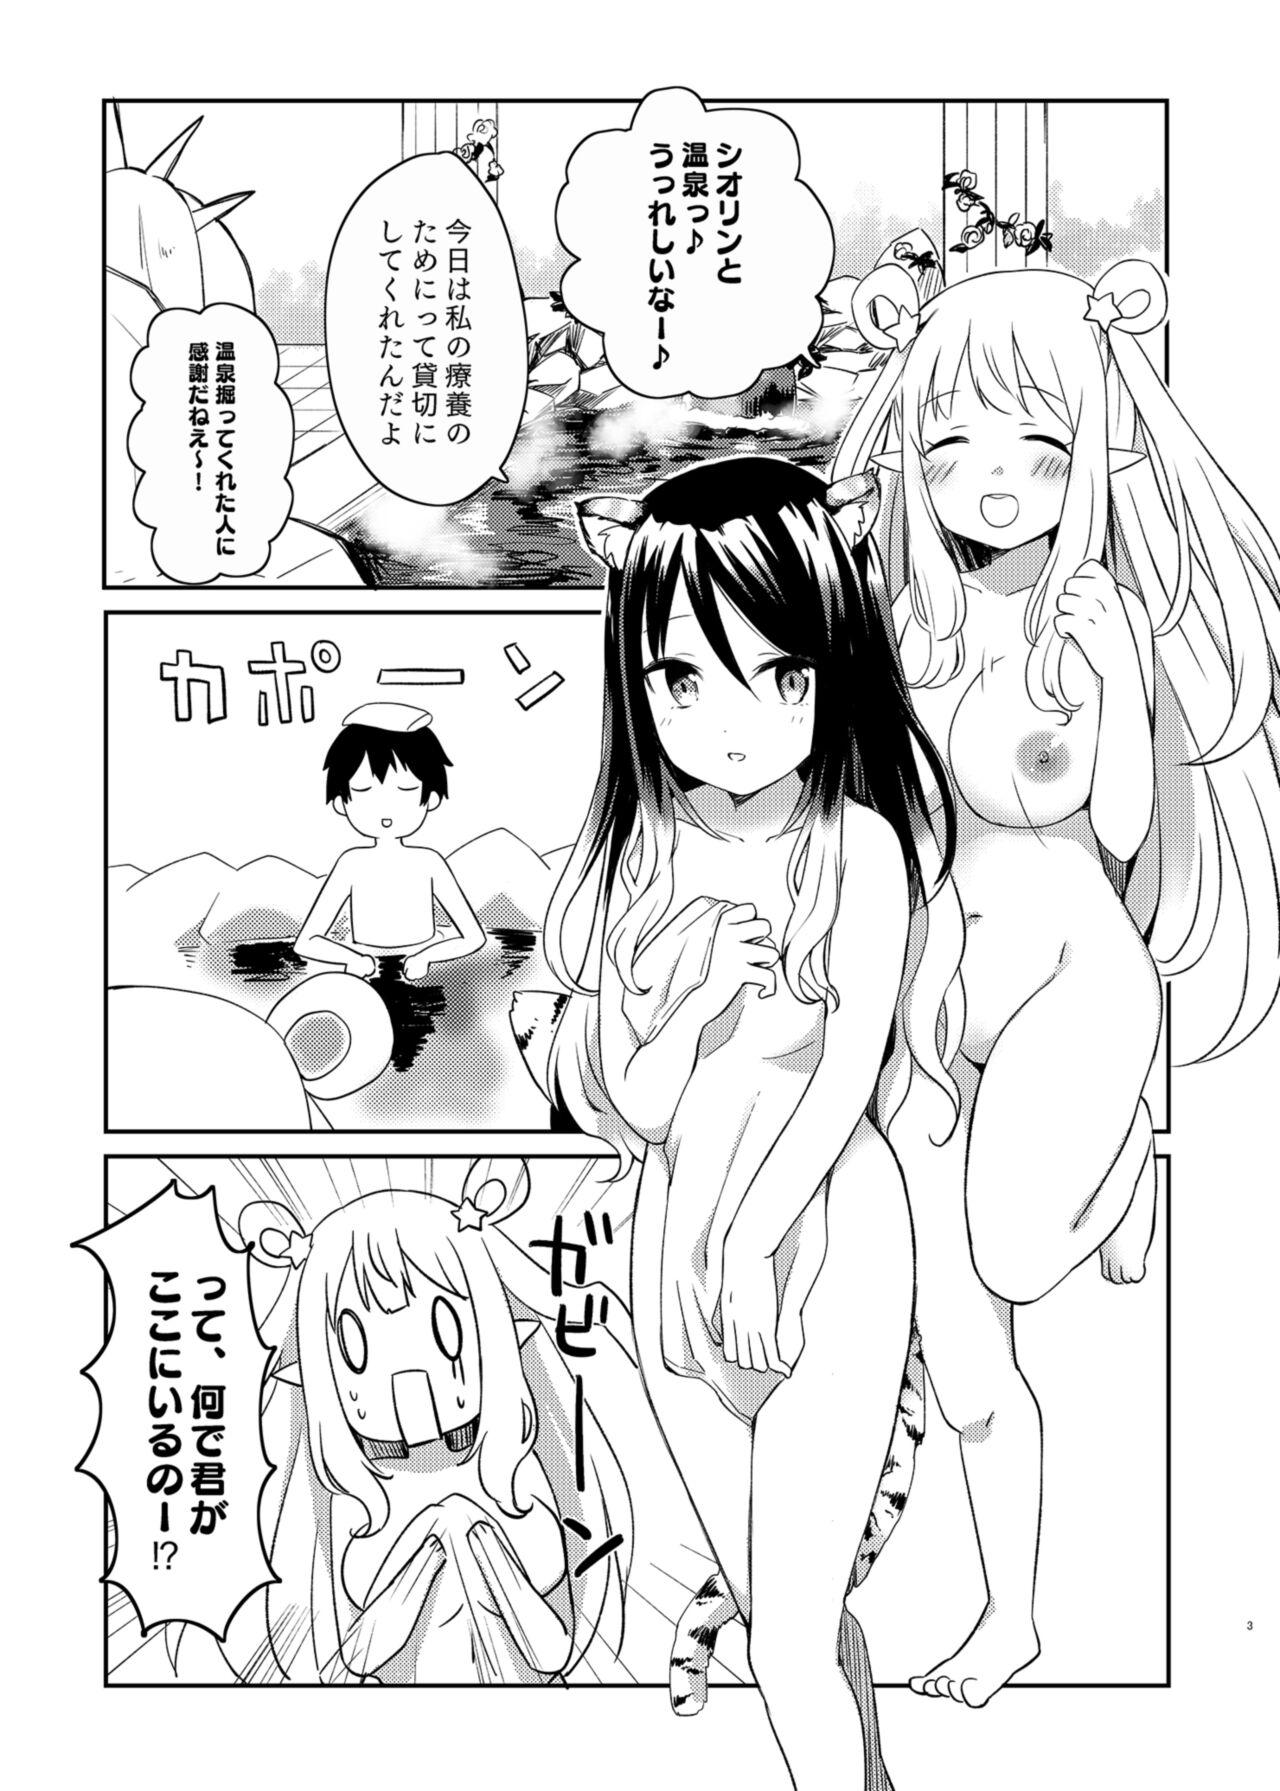 Fitness Hatsune to Shiori no Yukemuri Daisakusen - Princess connect Fingering - Page 3